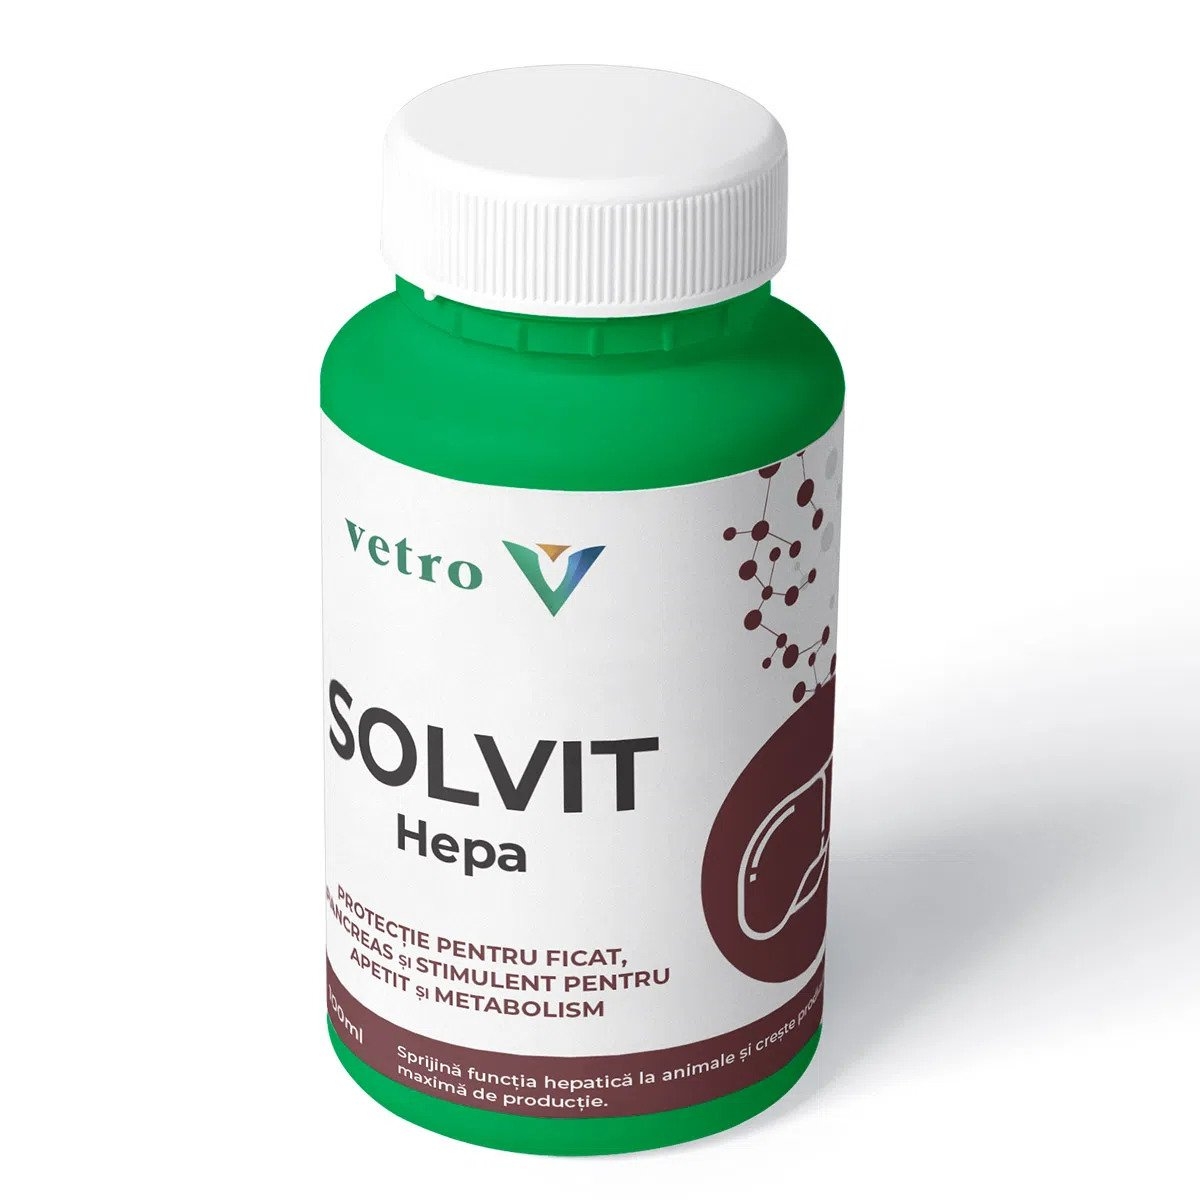 Solvit Hepa, 100 ml petmart